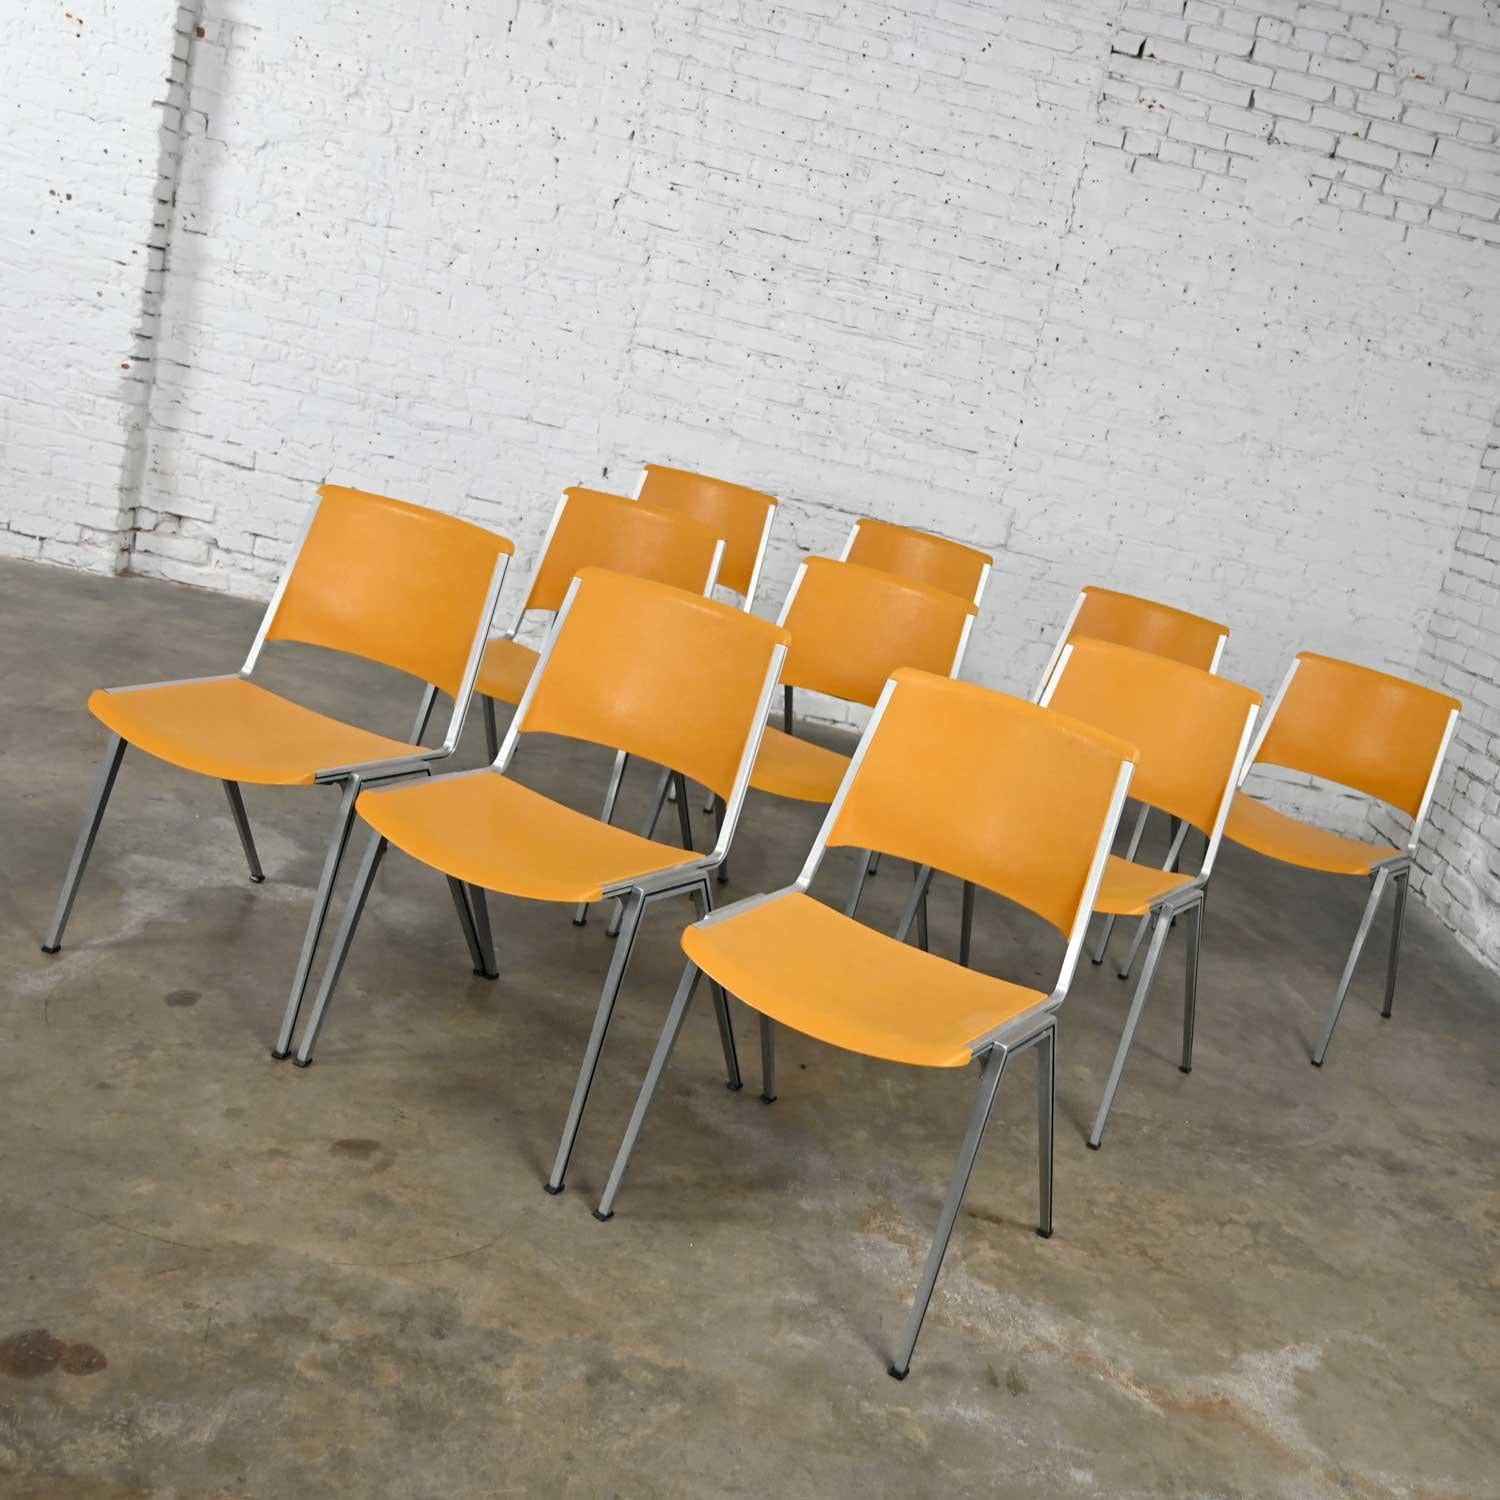 Superbes chaises empilables vintage Steelcase modèle #1278 en plastique jaune or ou jaune tournesol. Superbe look industriel moderne du milieu du siècle. Composé de cadres en aluminium extrudé et de sièges et dossiers en plastique moulé de couleur